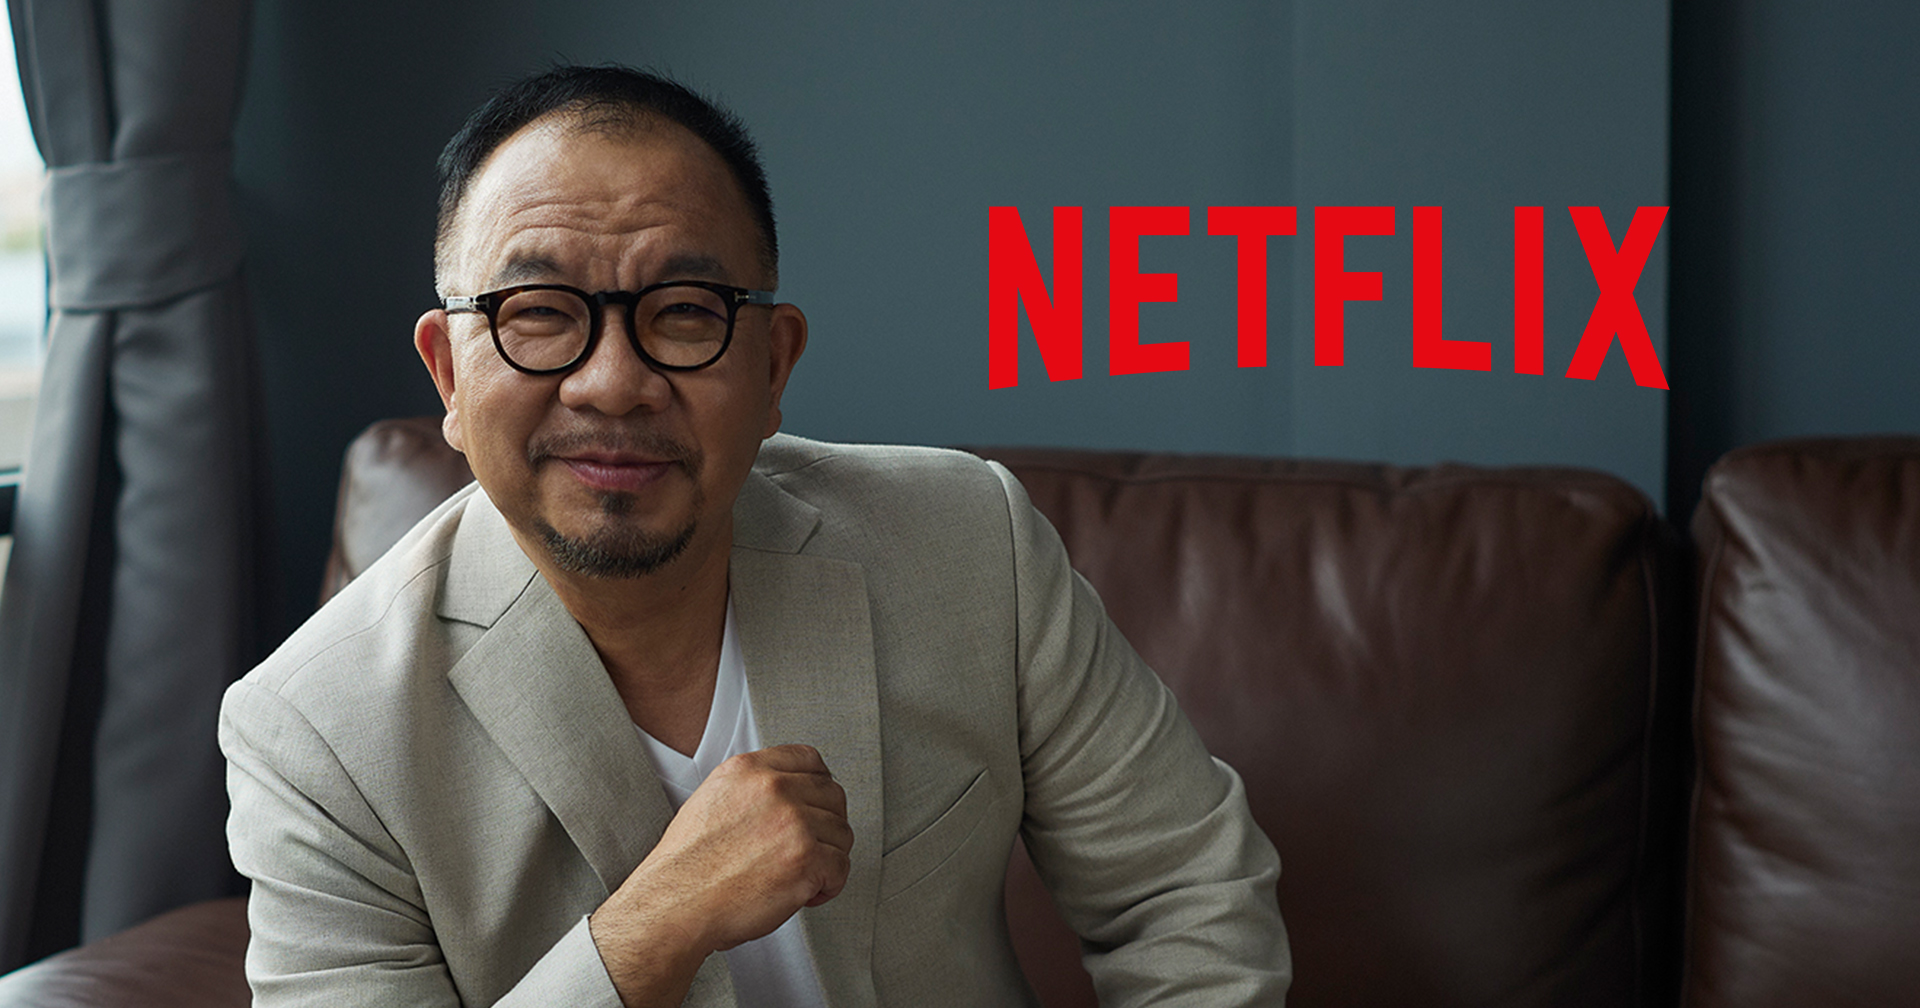 สัมภาษณ์ ยงยุทธ ทองกองทุน กับทิศทางของ Netflix ไทย ที่จะเกิดขึ้นในอนาคต